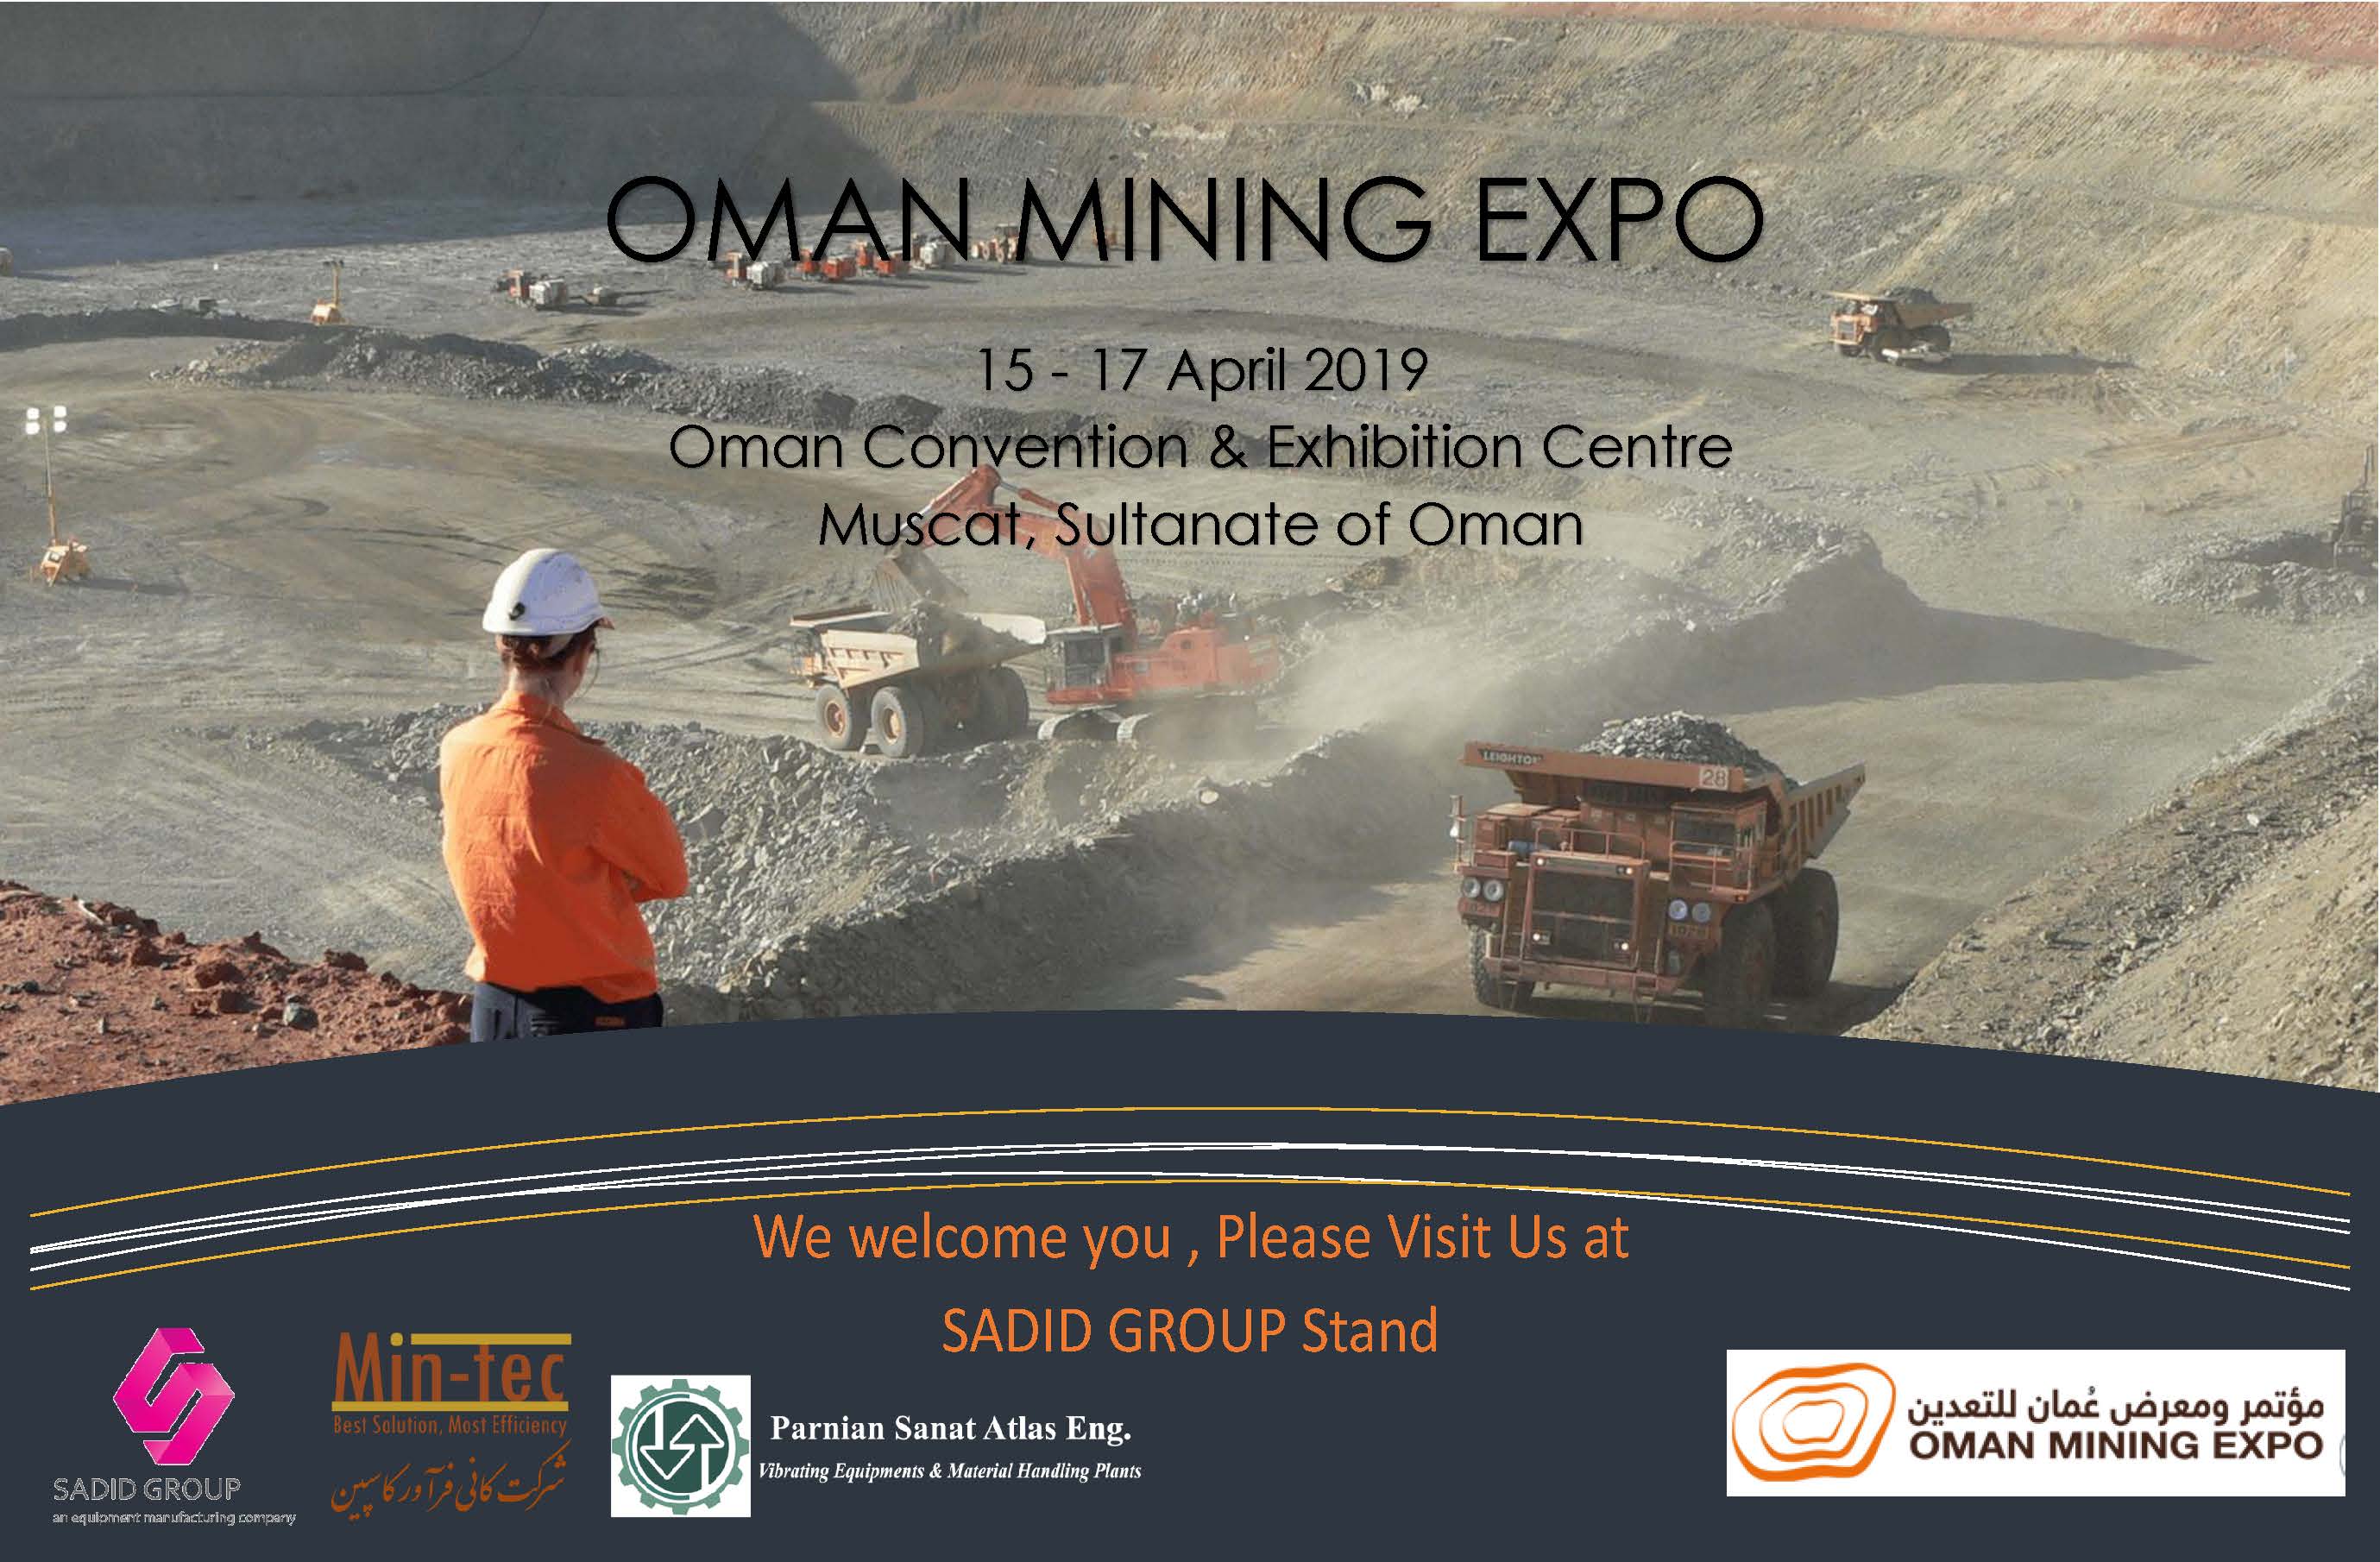 نمایشگاه معدن عمان